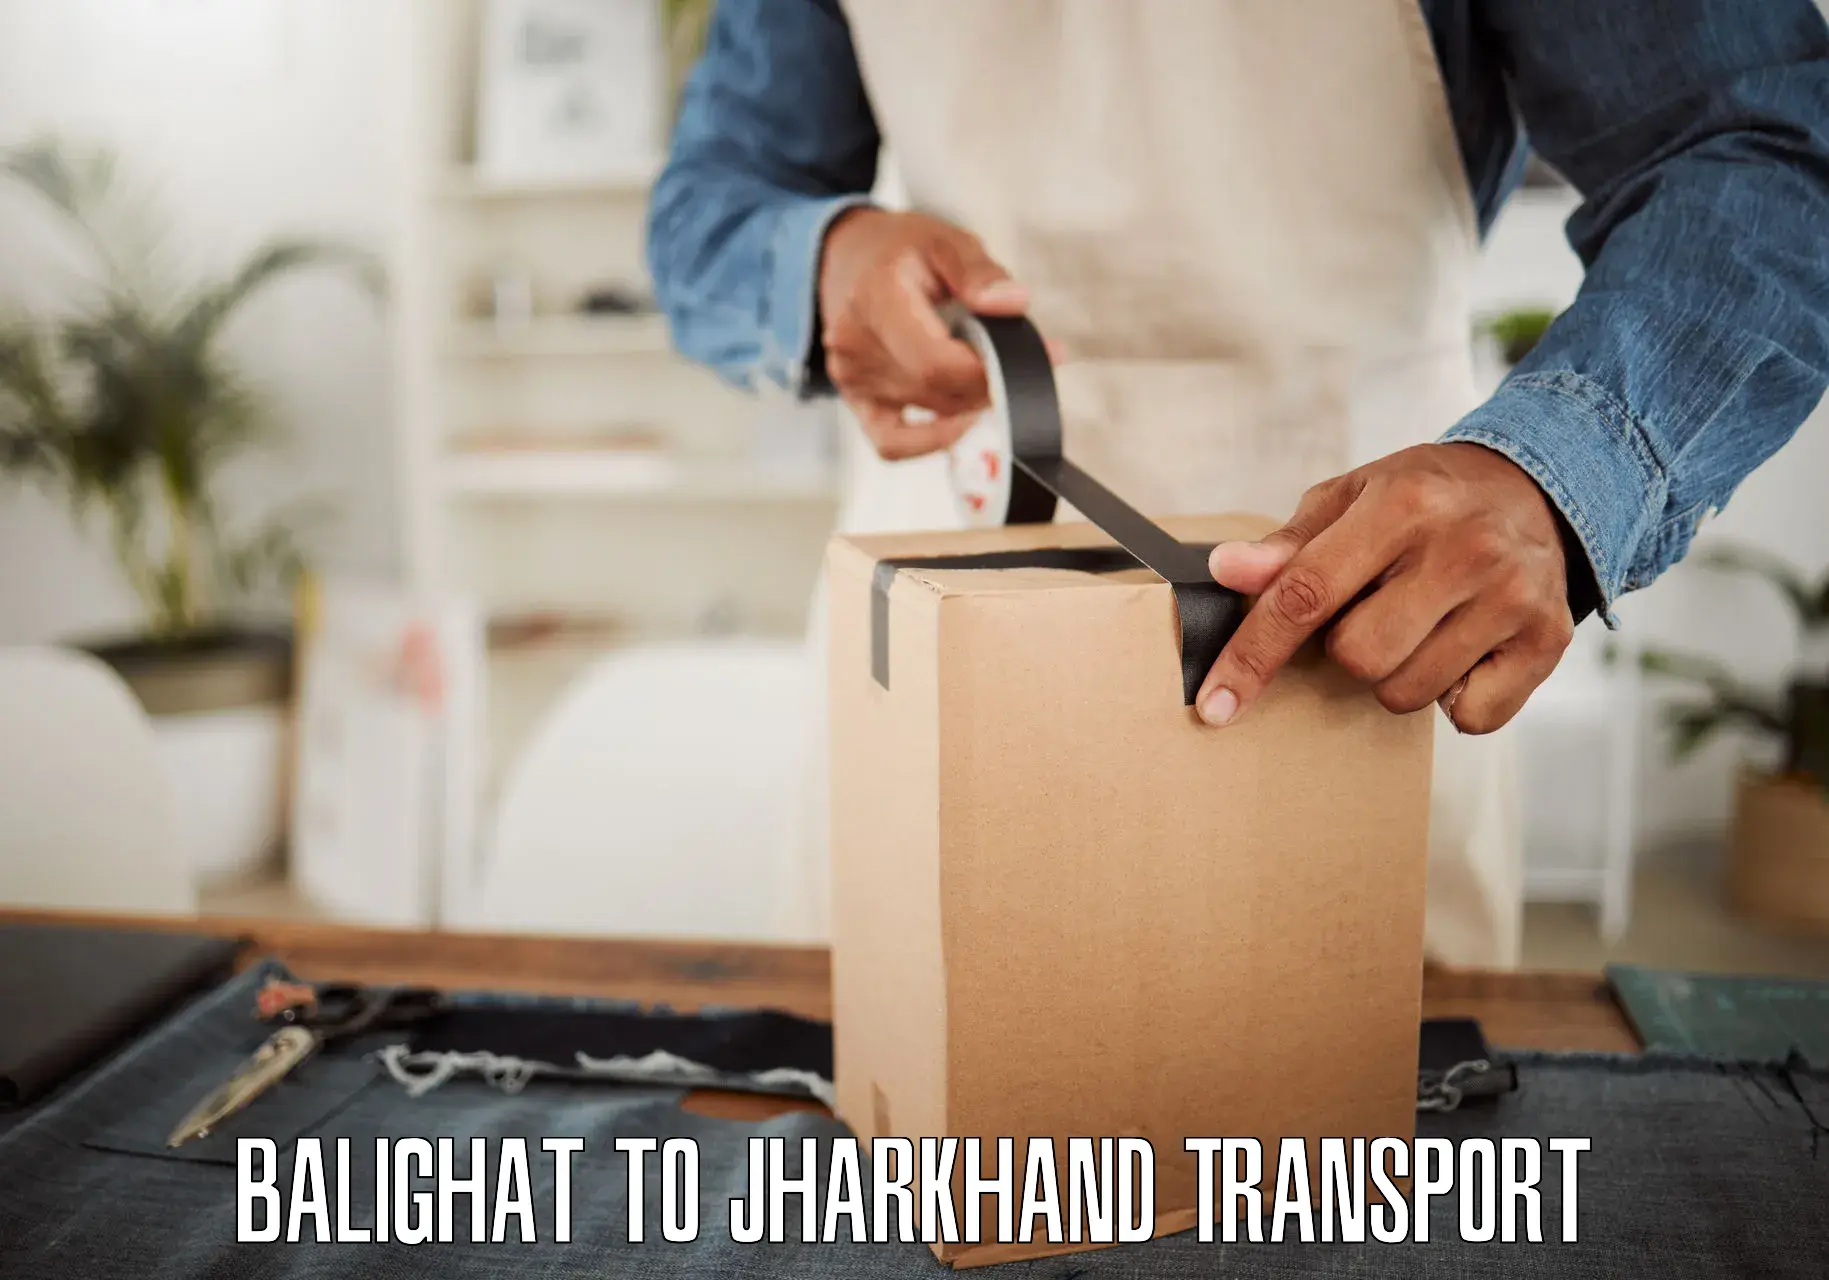 Truck transport companies in India Balighat to Daltonganj